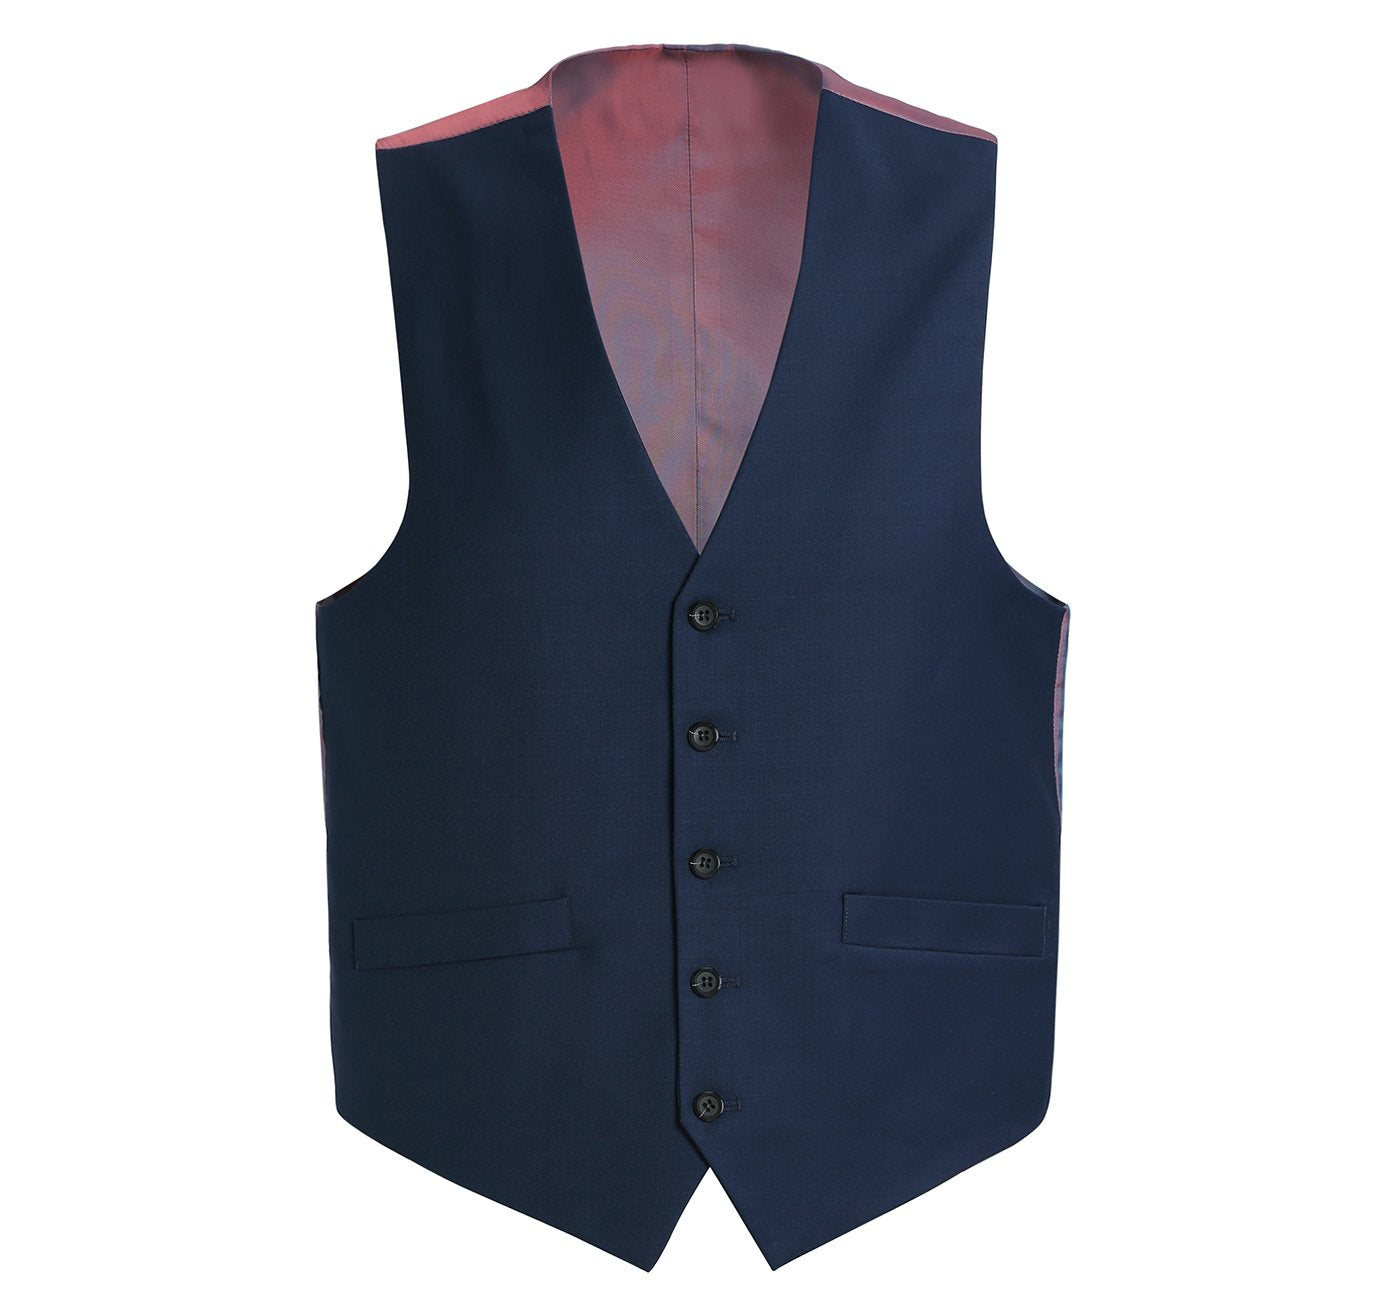 508-19 Men's Classic Fit Navy-Blue Suit Separate Wool Vest